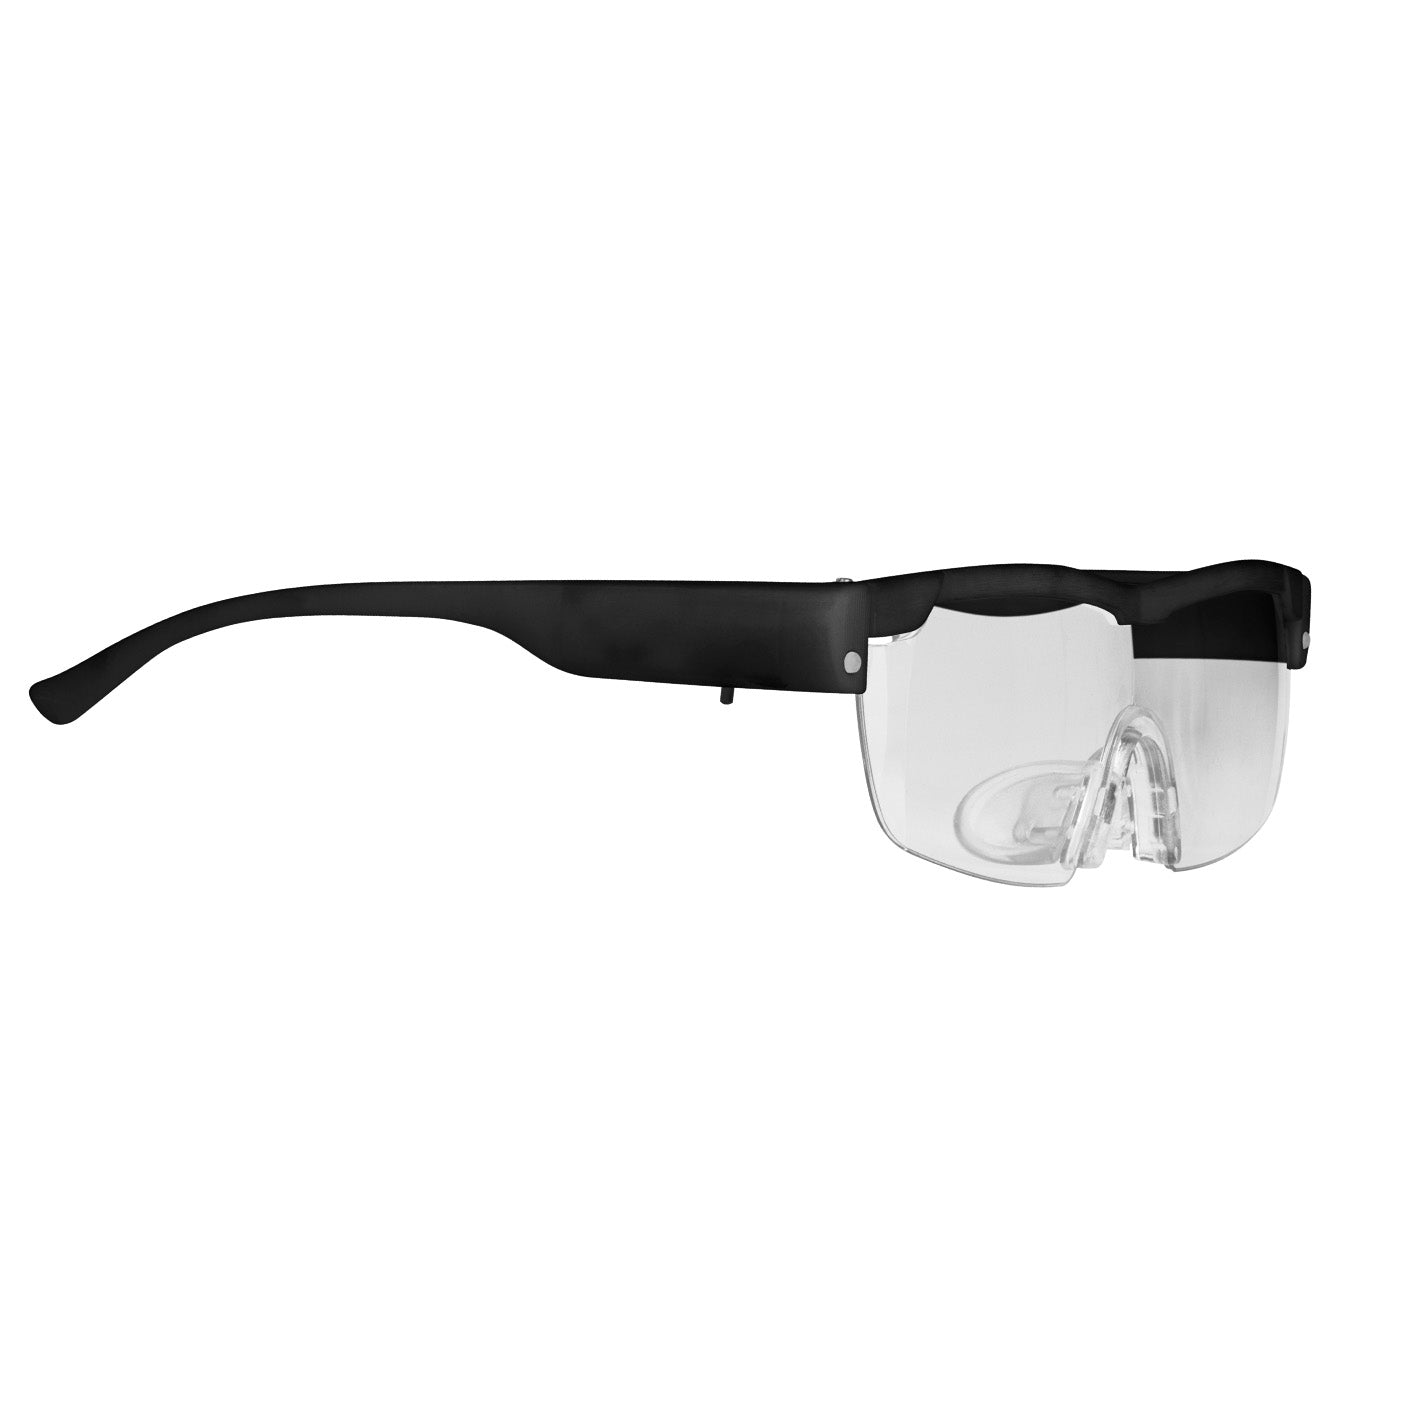 Vergrößerungsbrille LED - schwarz